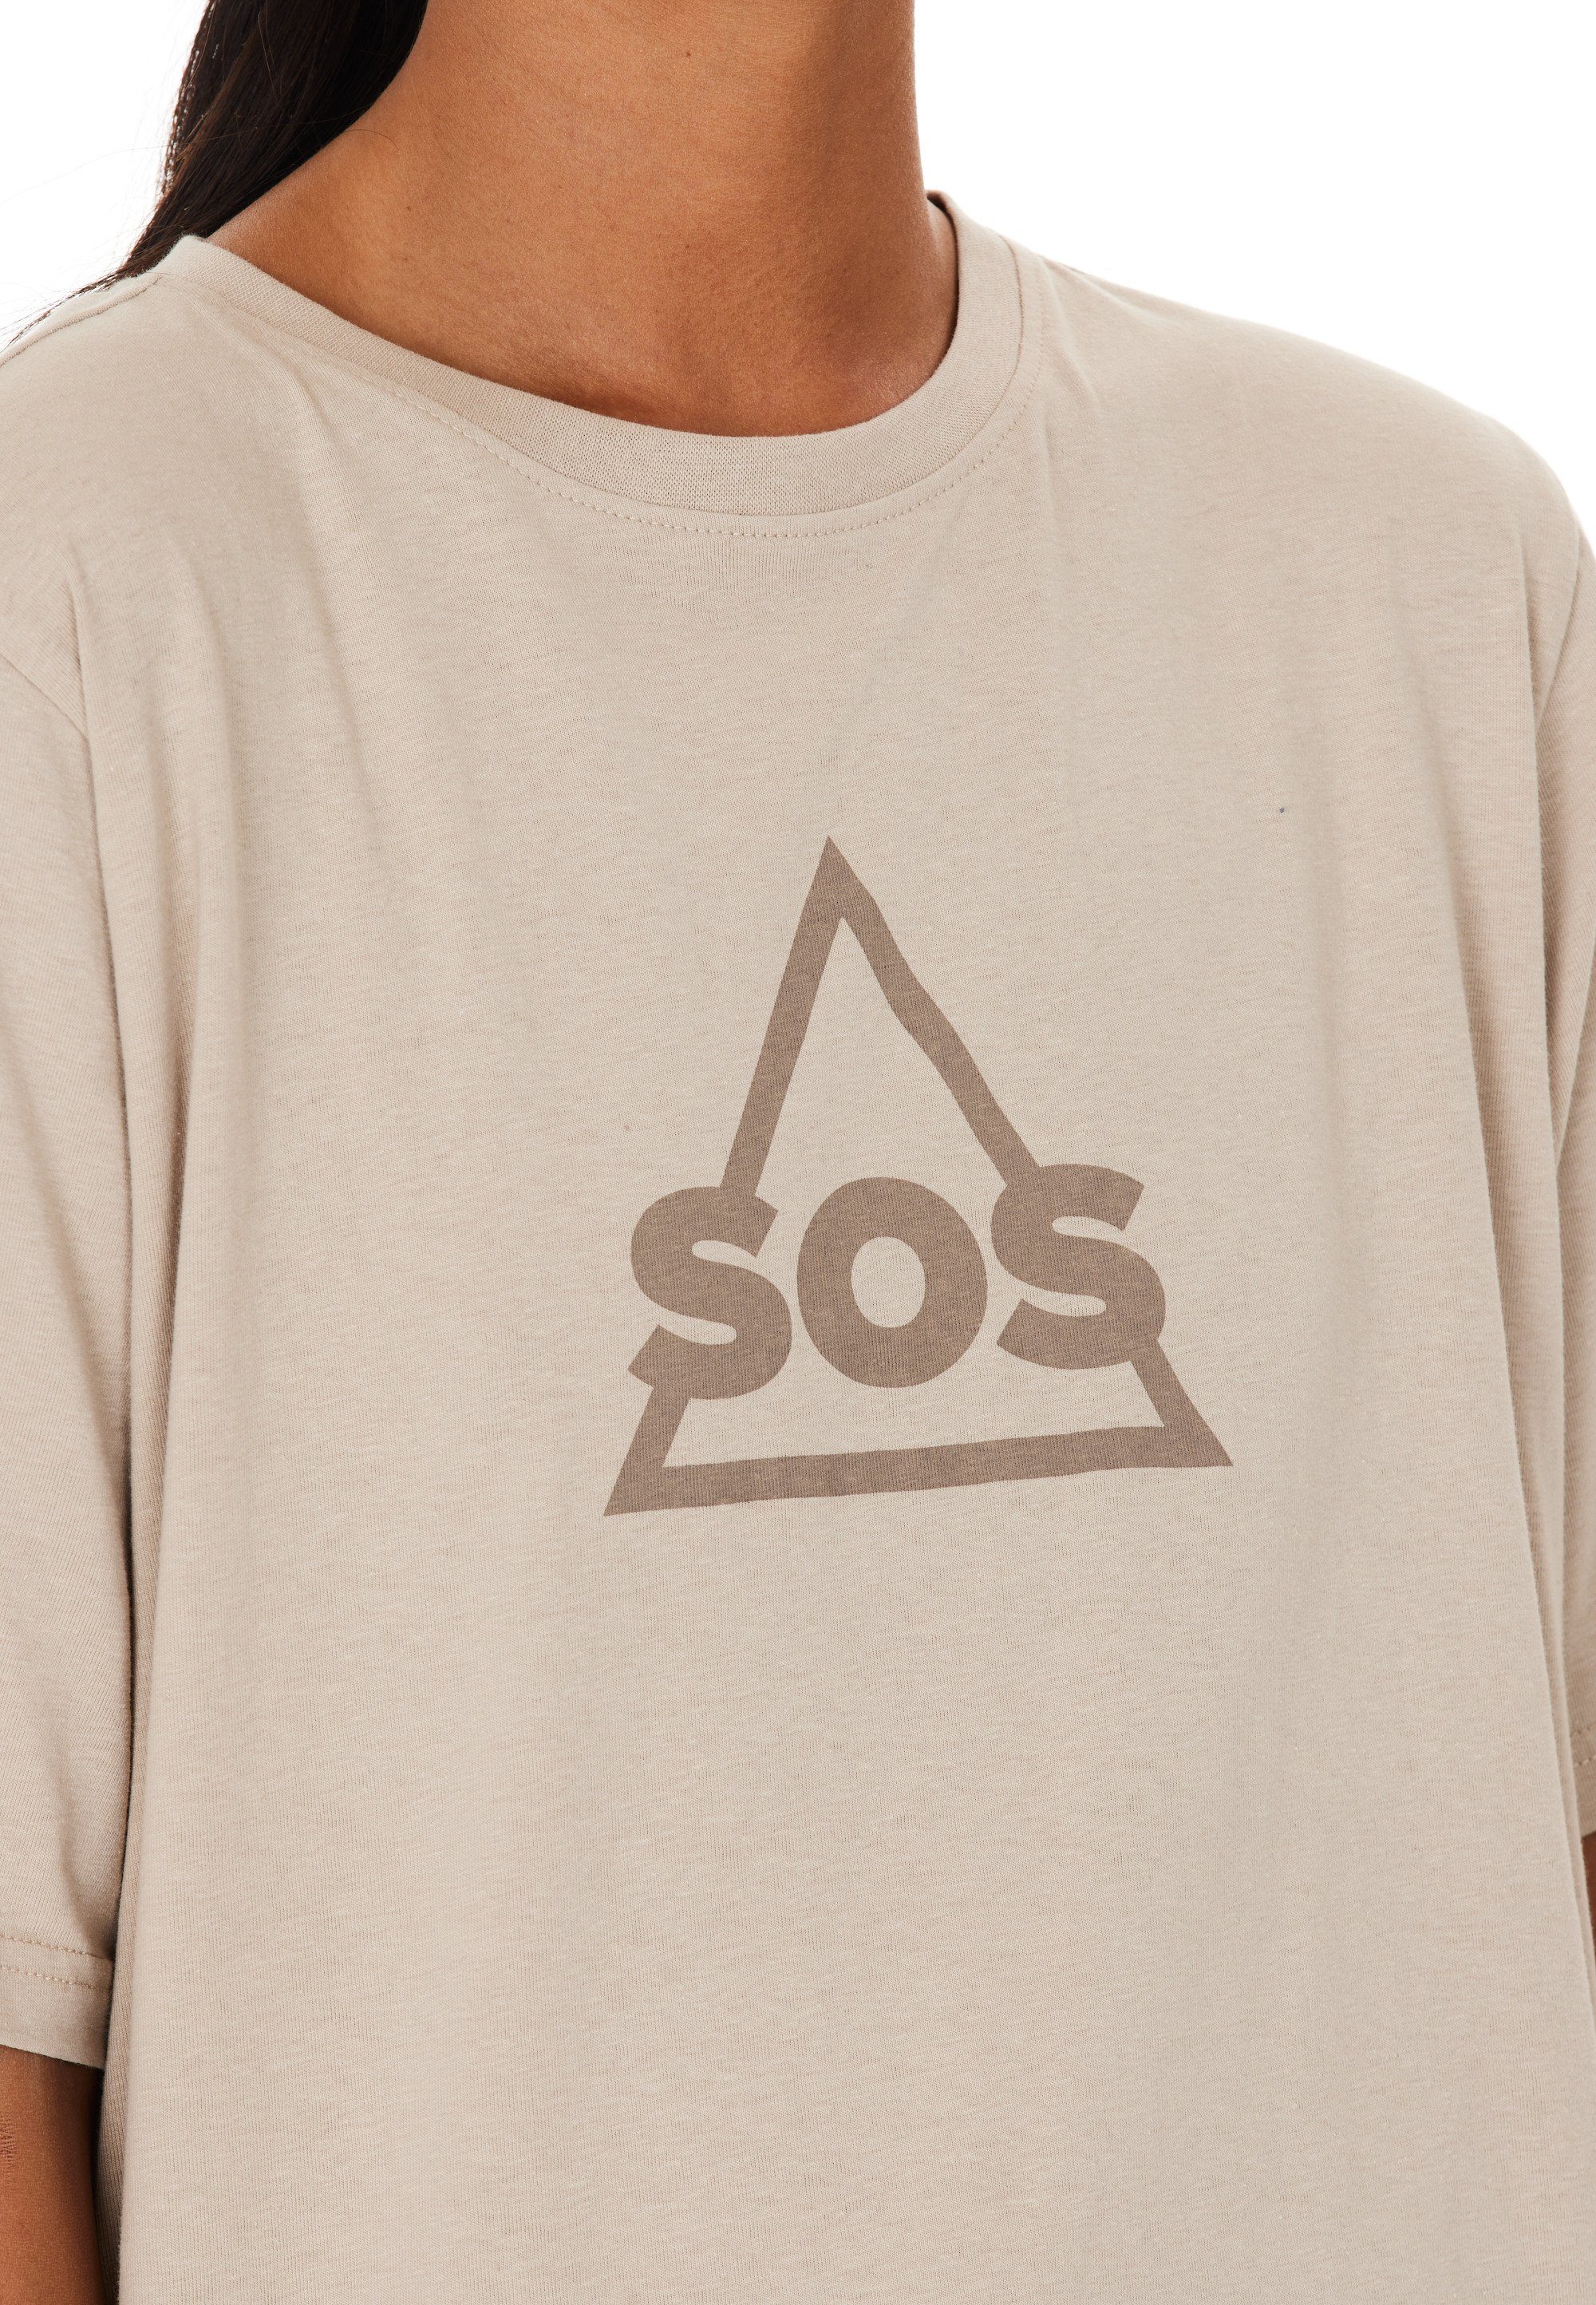 SOS Markenlogo auf taupe Funktionsshirt Front mit trendigem Kvitfjell der